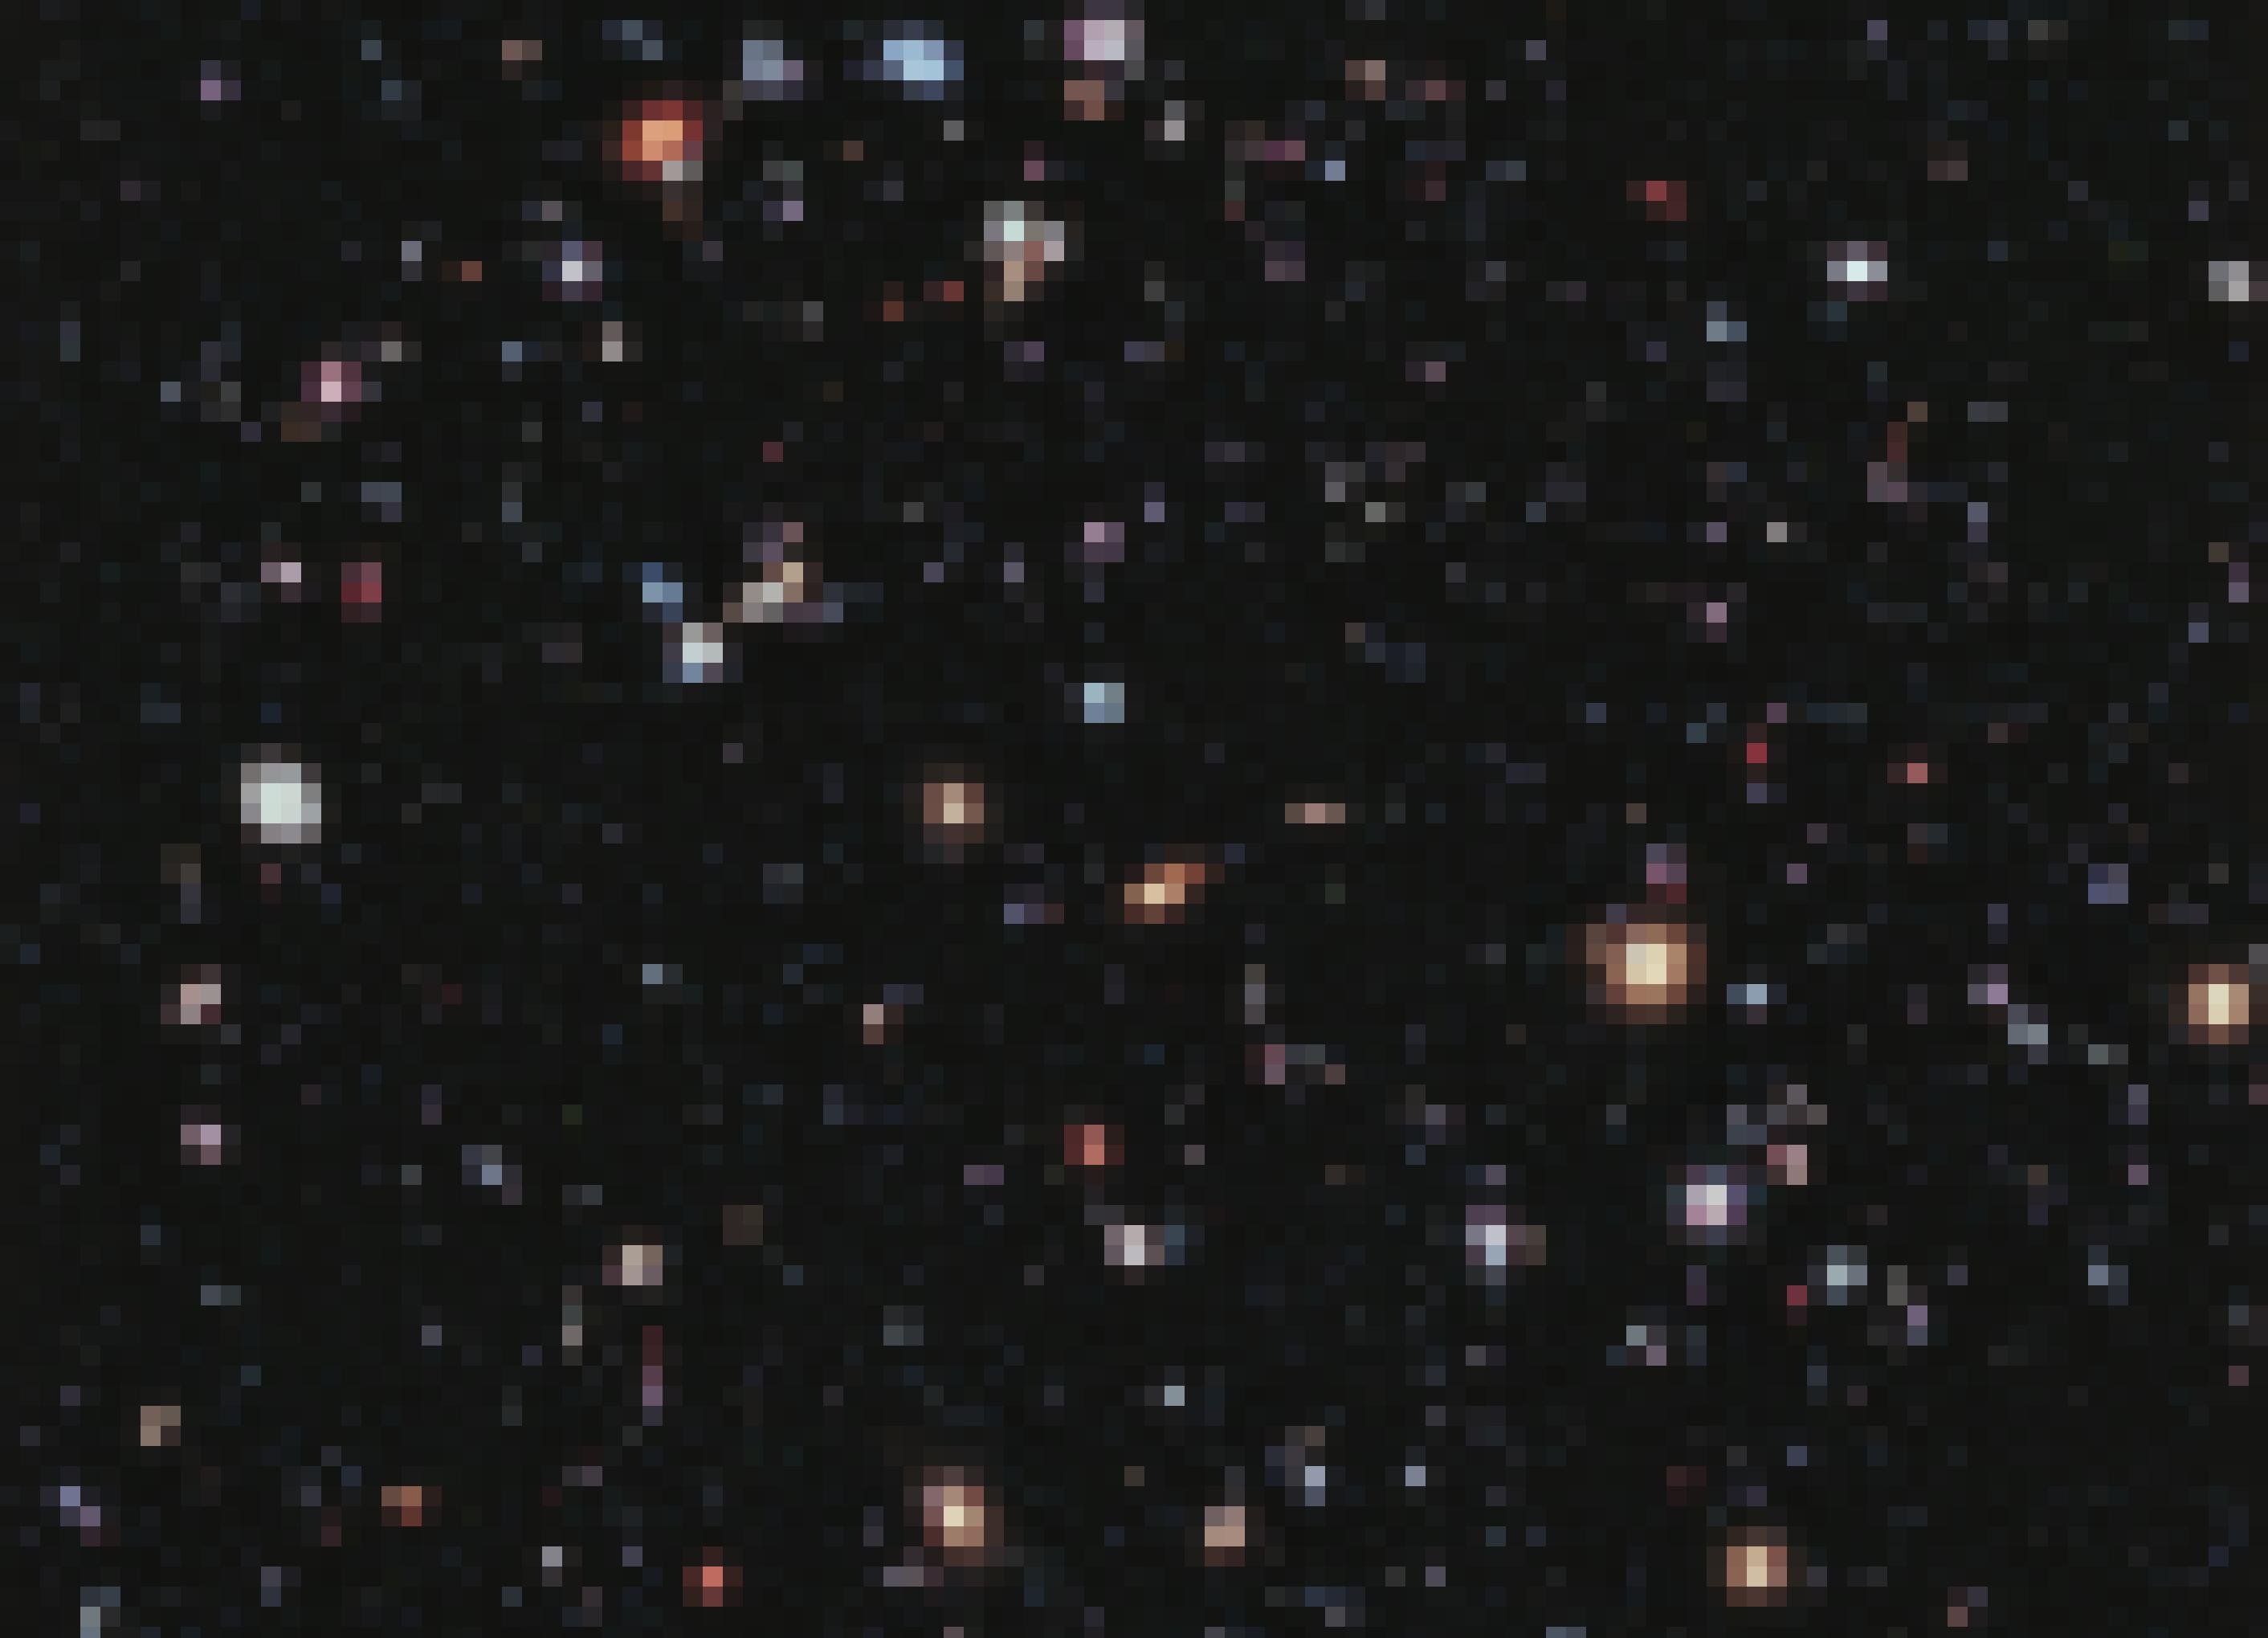 Vor dem schwarzen Hintergrund des Alls zu sehen sind zahllose, winzige Milchstraßensysteme. Sie sehen kreisförmig, elliptisch oder wie längliche Stäbchen aus, leuchten in rötlichen, weißen oder bläulichen Farbtönen und bei einigen sind Spiralstrukturen zu erkennen. Das Bild wurde aus 2000 vom Hubble-Weltraumteleskop aufgenommenen Einzelfotos zusammengesetzt und zeigt Objekte aus einer Zeit vor bis zu 13,2 Milliarden Jahren. Die ersten Galaxien müssen also bereits wenige hundert Jahrmillionen nach dem Urknall entstanden sein, der vor 13,8 Milliarden Jahren stattfand.